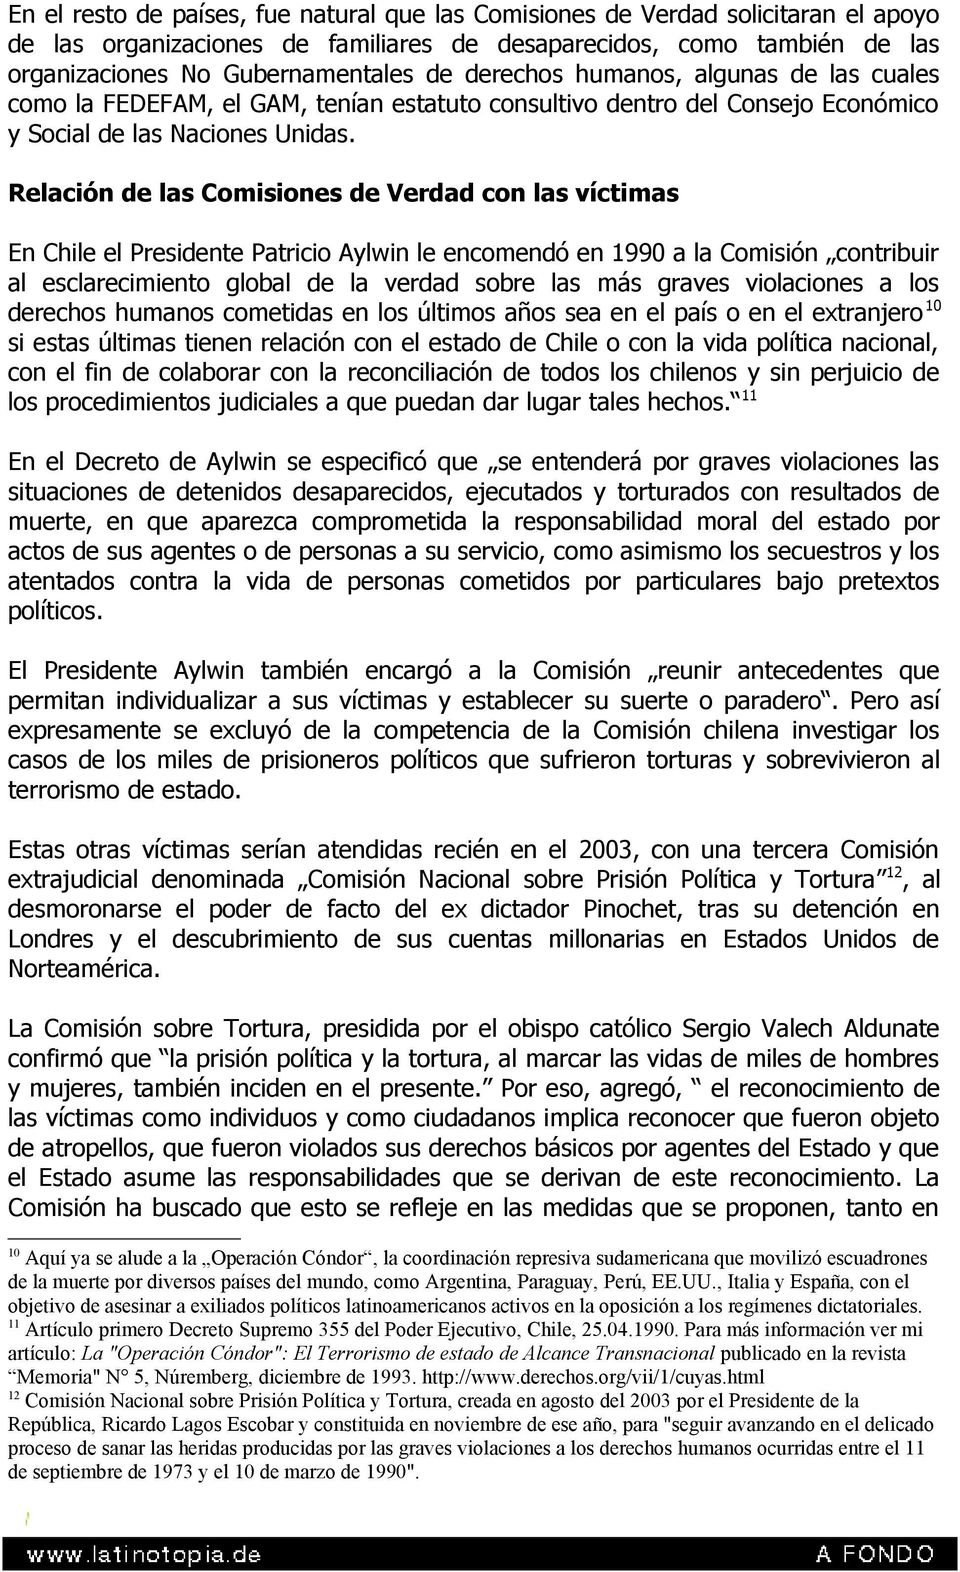 Relación de las Comisiones de Verdad con las víctimas En Chile el Presidente Patricio Aylwin le encomendó en 1990 a la Comisión contribuir al esclarecimiento global de la verdad sobre las más graves